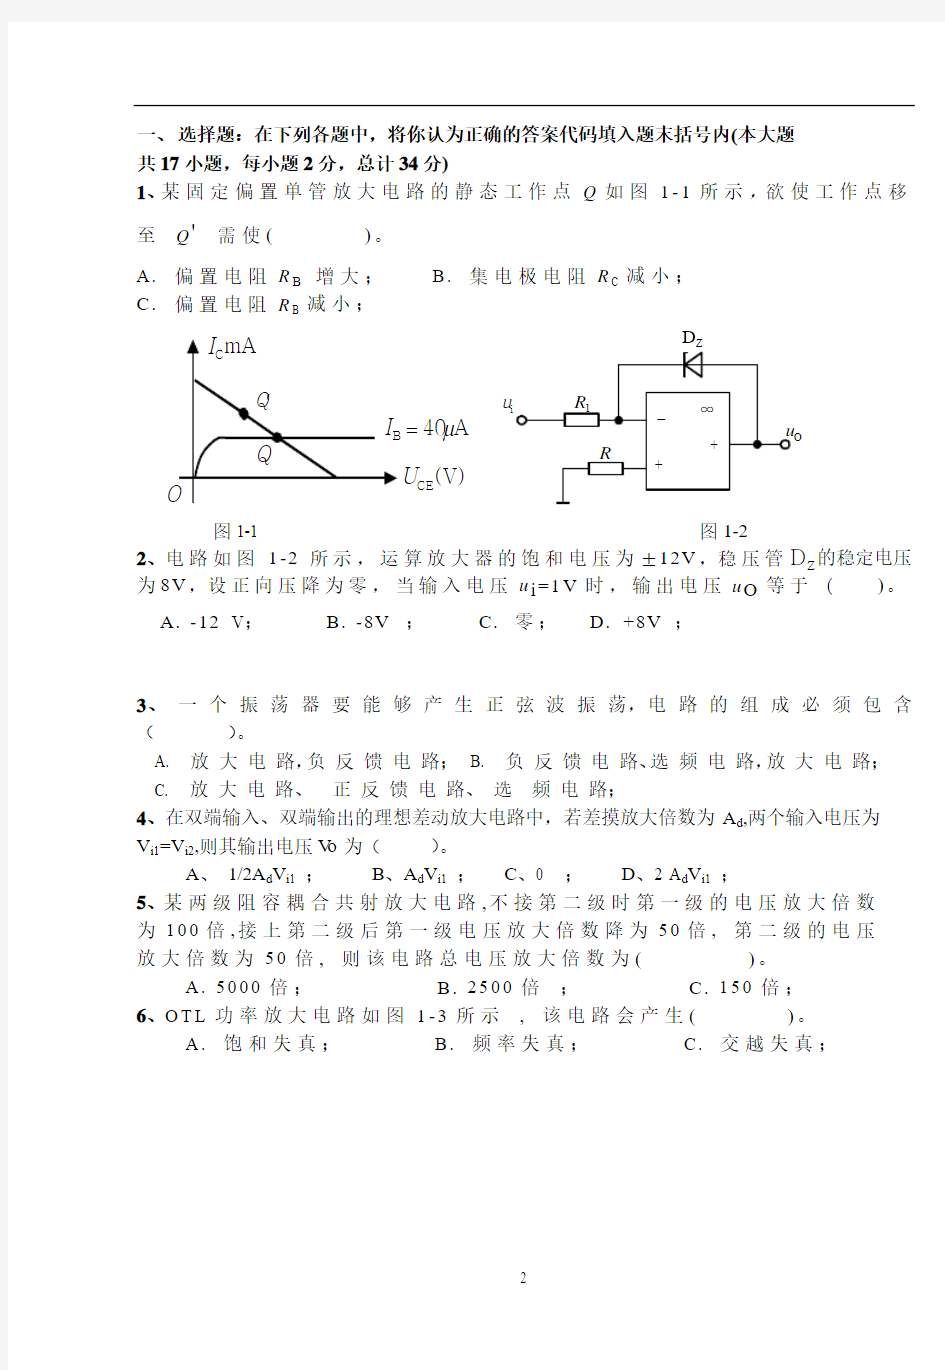 广西大学模拟电路课程测验考试试卷1